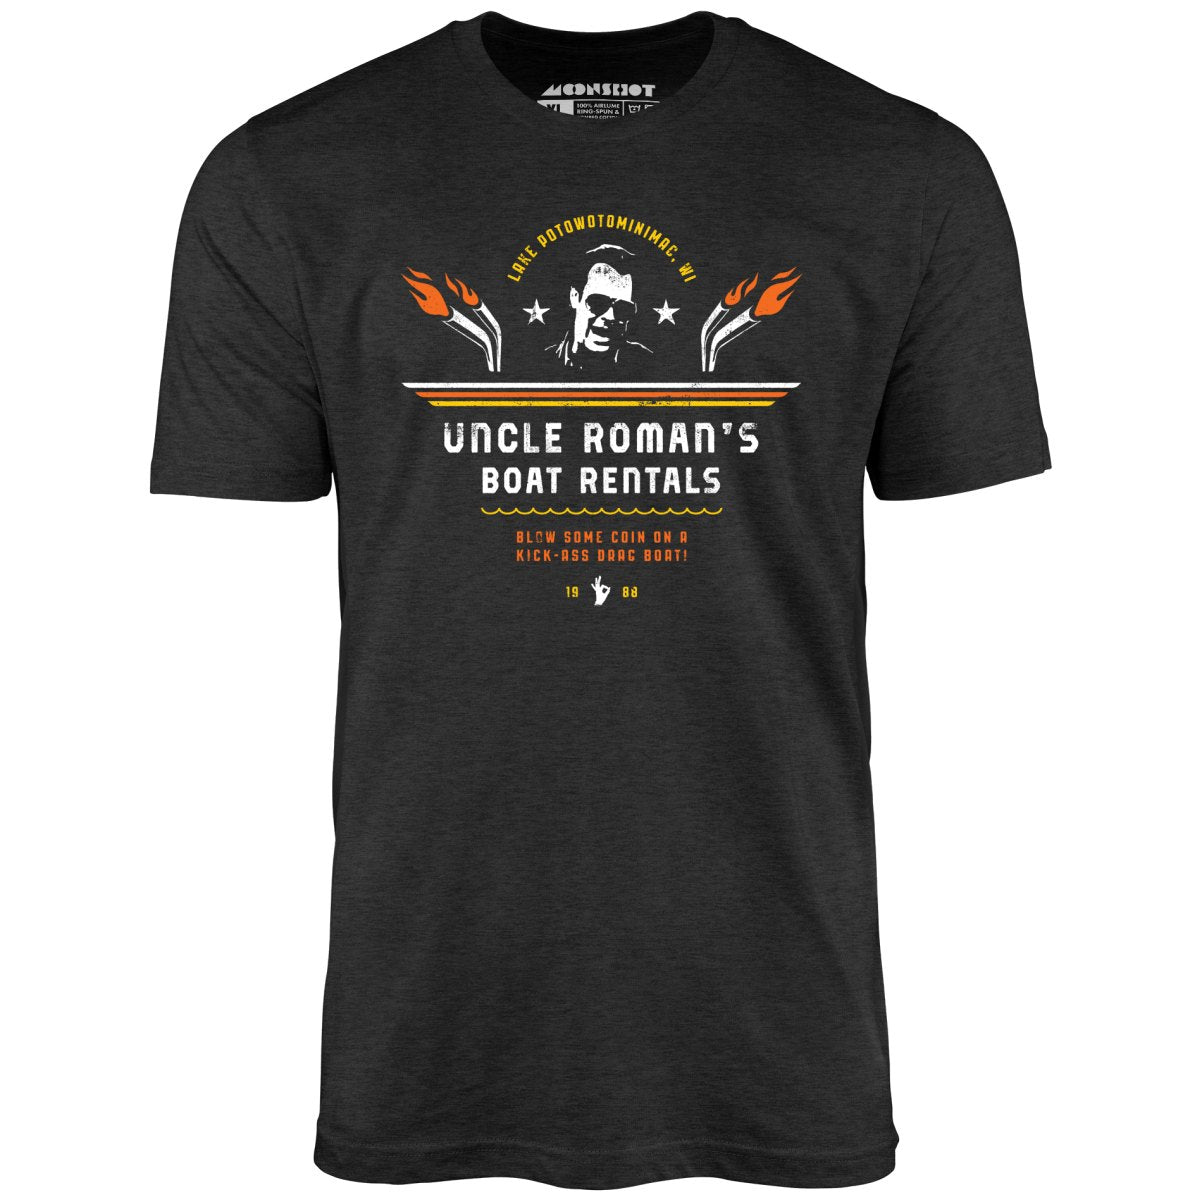 Uncle Roman's Boat Rentals - Unisex T-Shirt